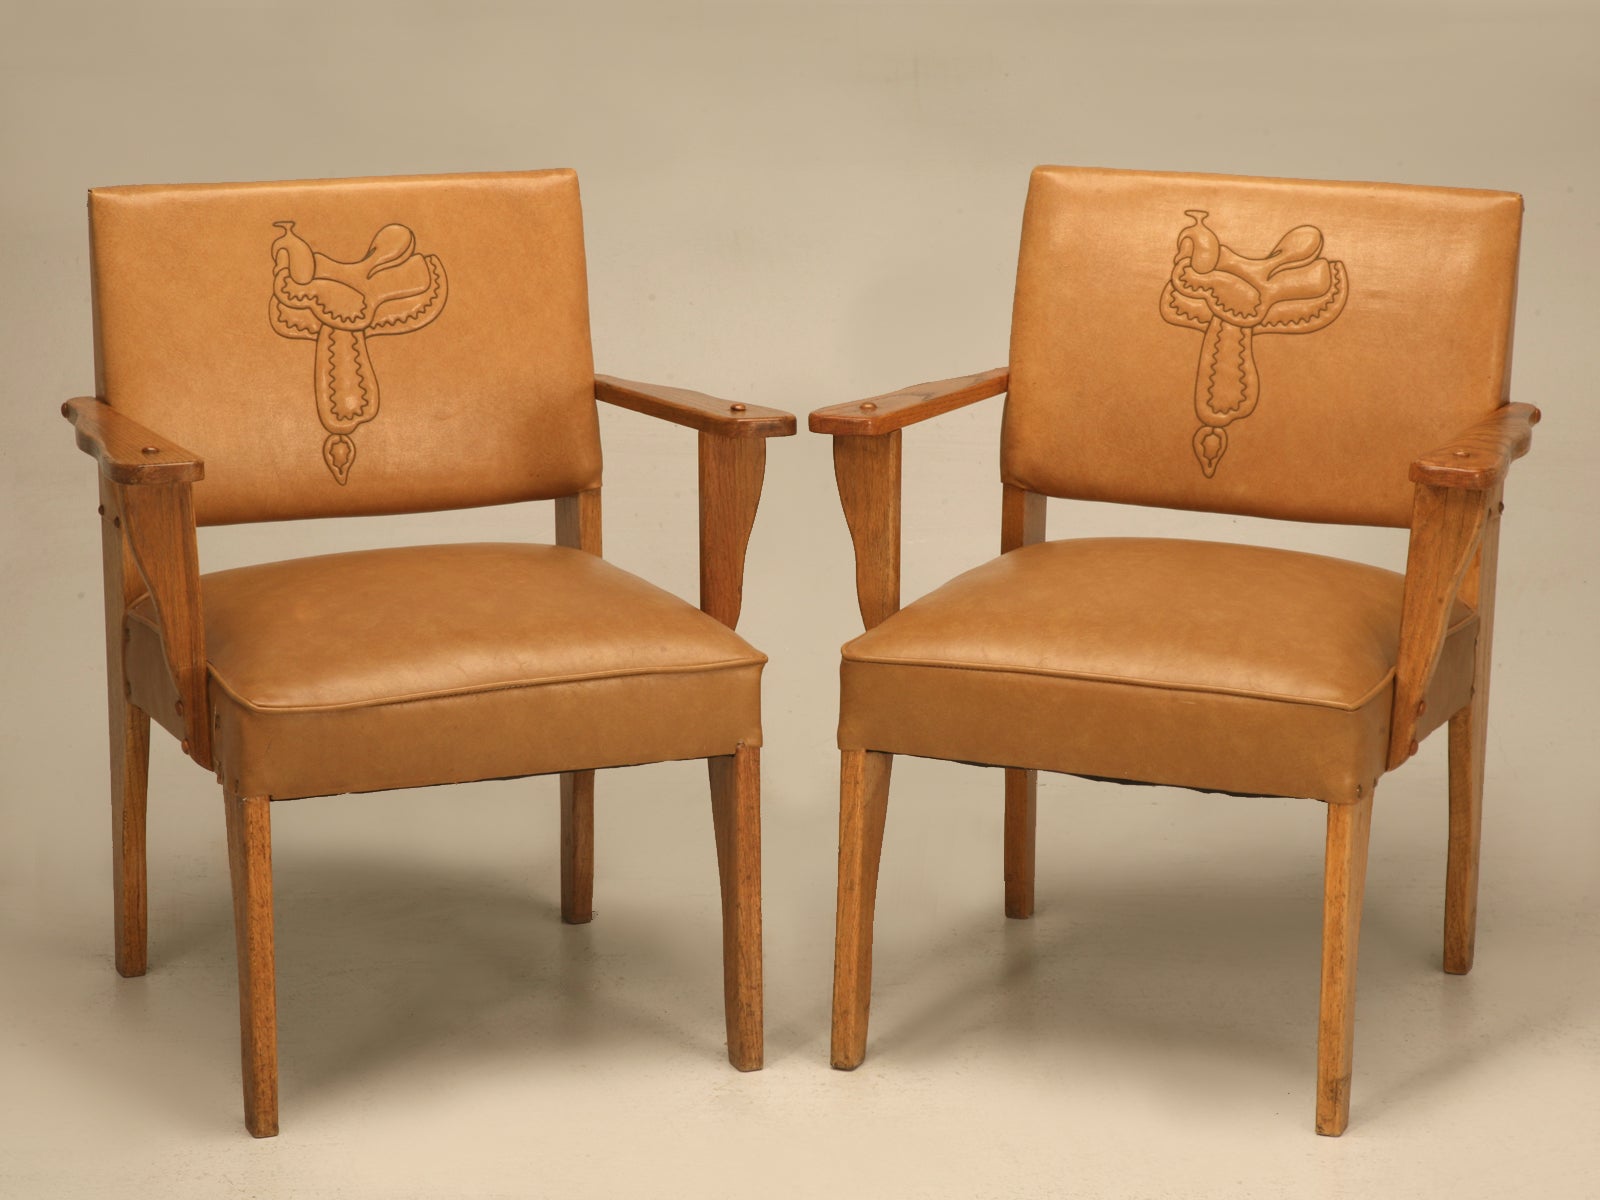 Magnificent Pair of Original "Ranch Oak" Cowboy Arm Chairs w/Saddle Decoration